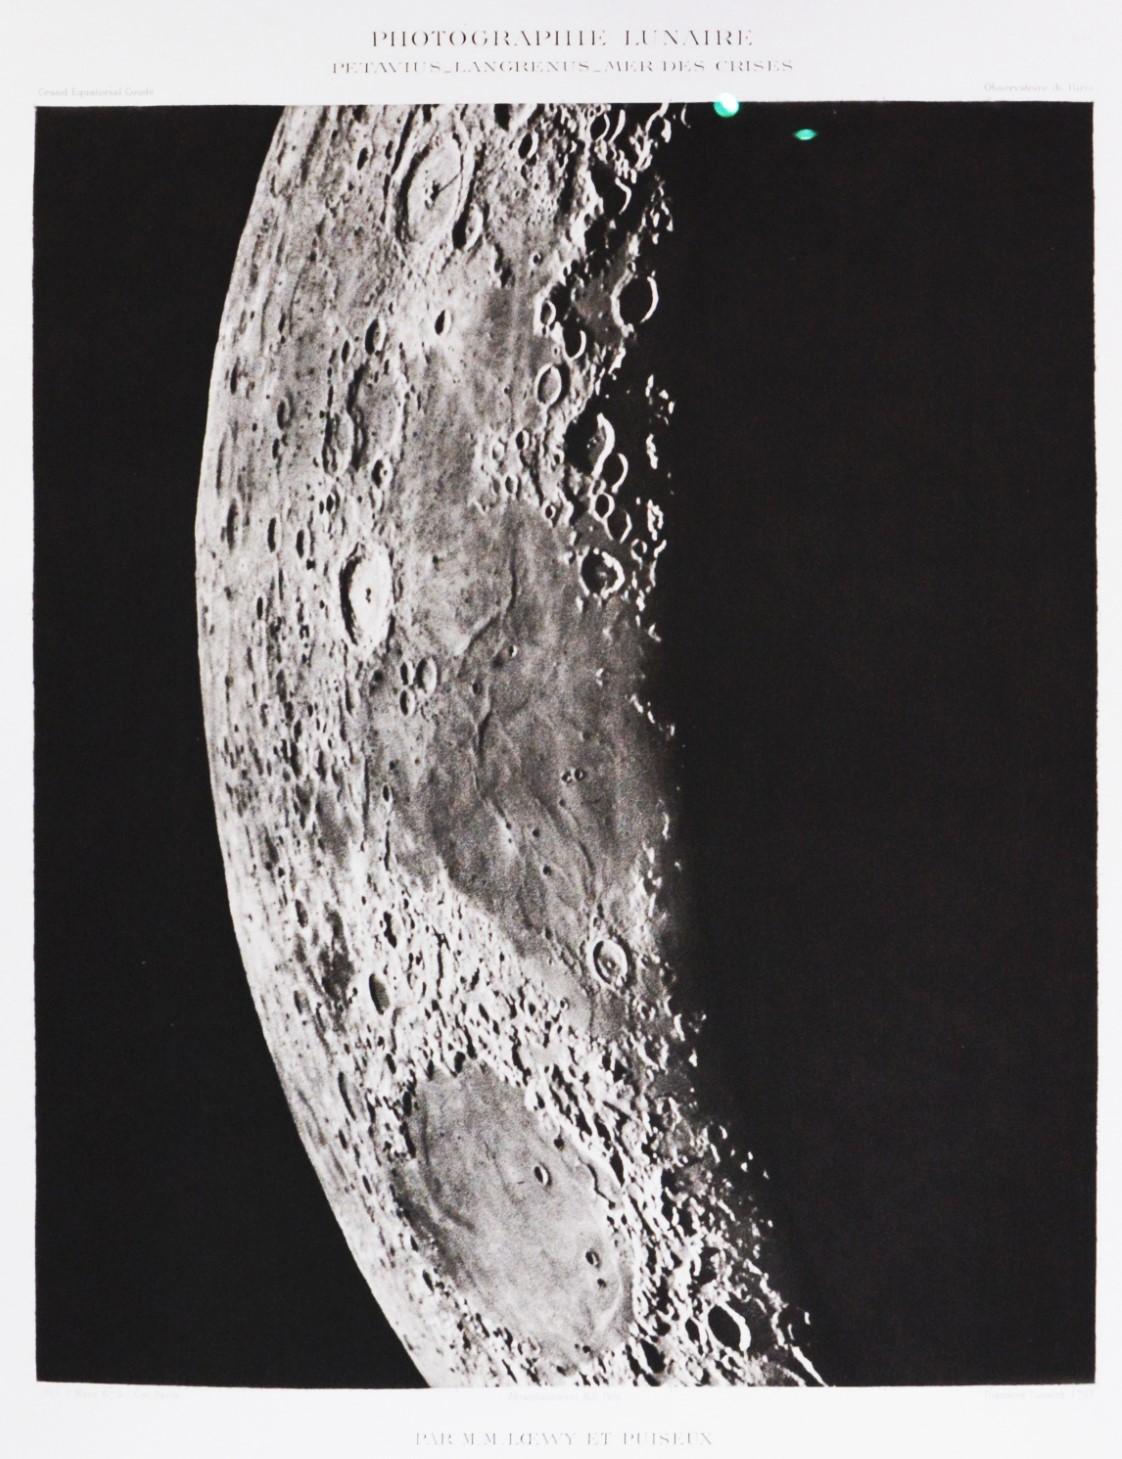 PETAVIUS_LANGRENUS_MER DES CRIS - Héliogravure of the Moon's Surface - Photograph by Moritz Loewy; Pierre-Henry Puiseux